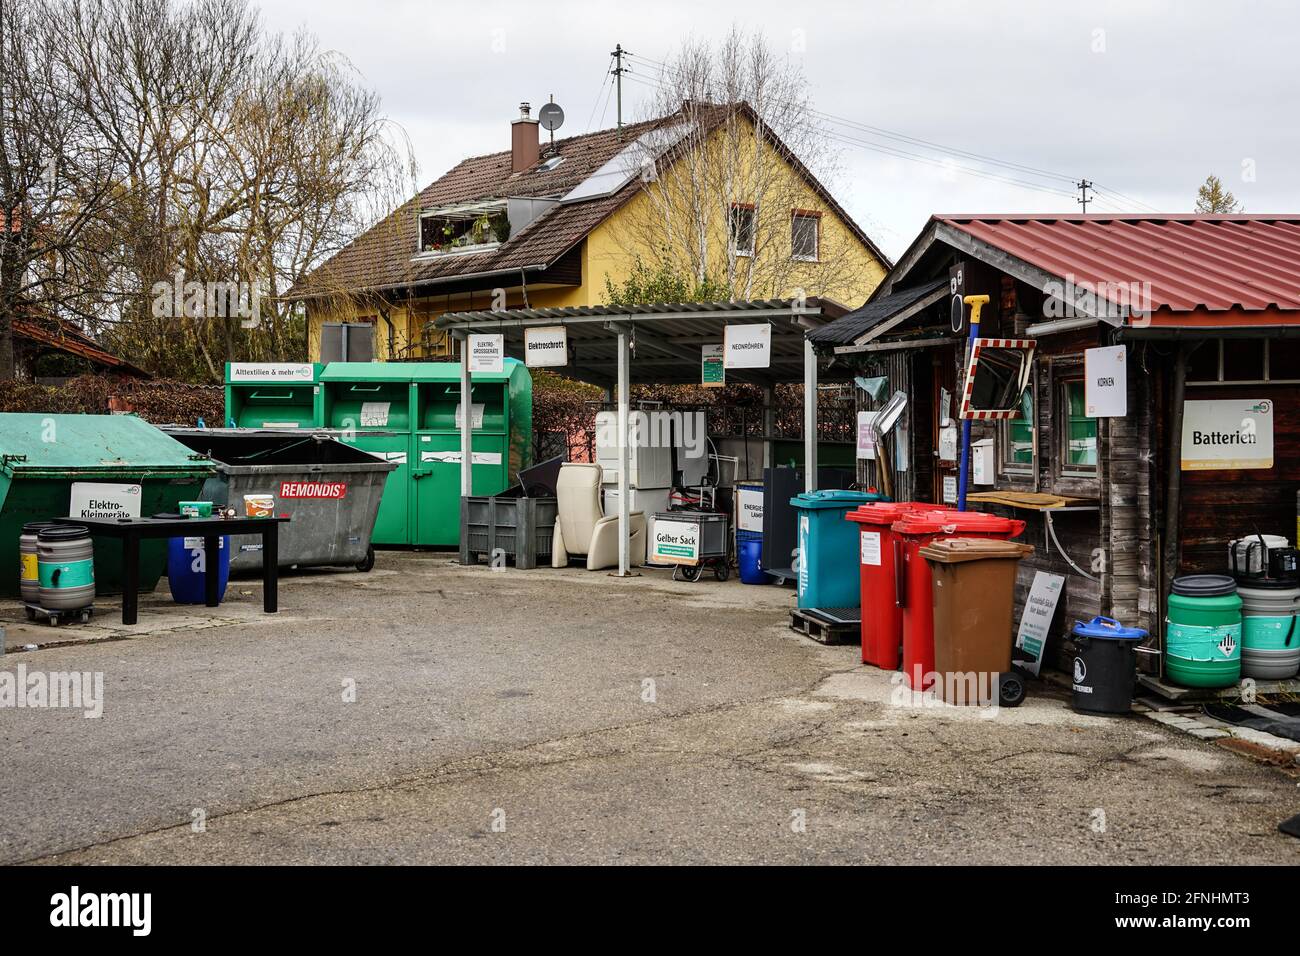 Ein Recyclingzentrum in einer Kleinstadt mit zahlreichen Behältern unterschiedlicher Größen für verschiedene Wertstoffe. Stockfoto